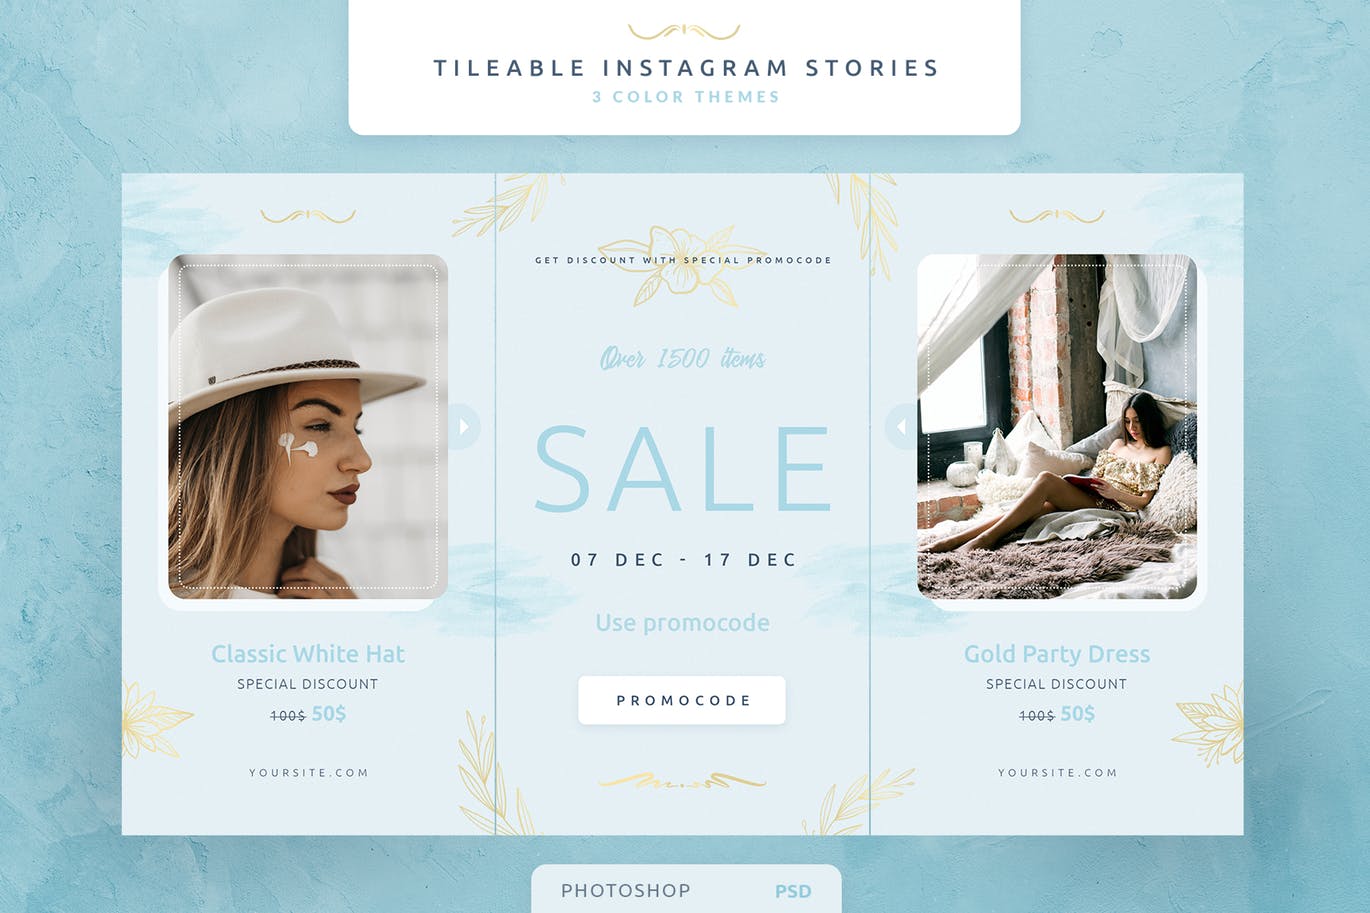 创意三列式Instagram社交品牌故事设计模板非凡图库精选 Tileable Instagram Stories插图(1)